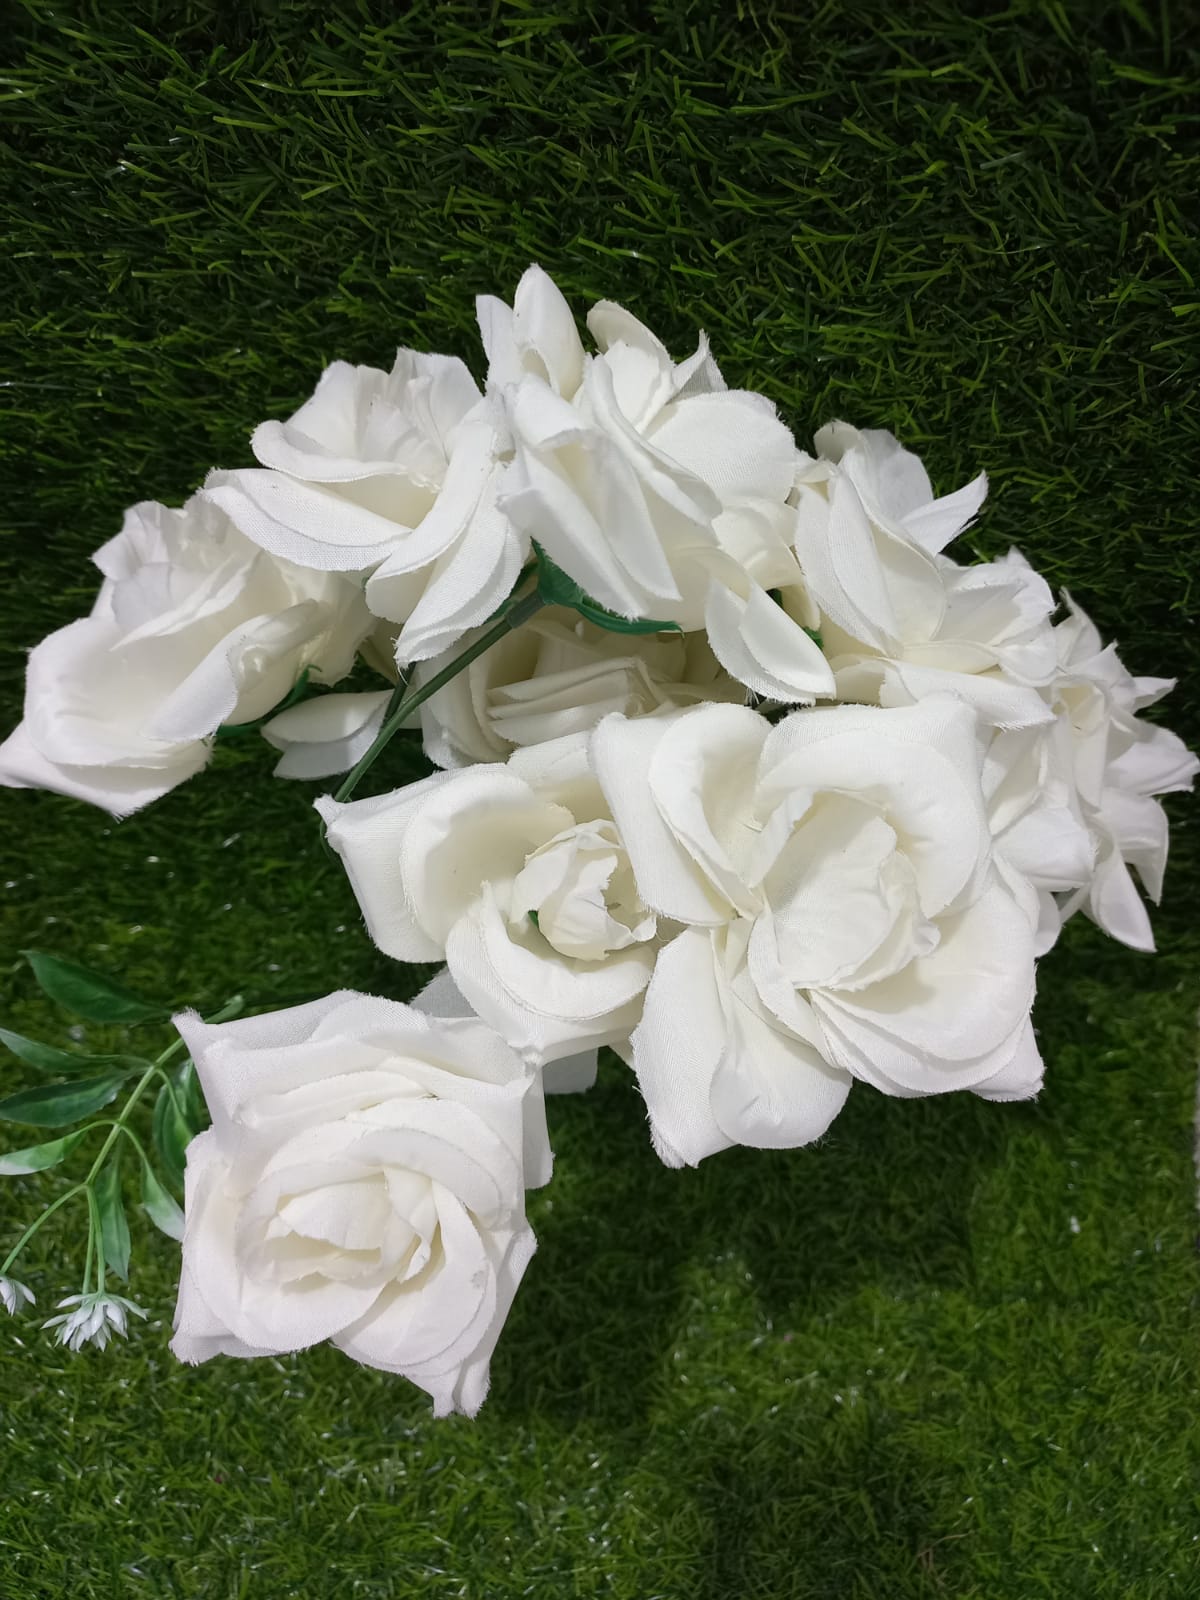 White roses- flowers